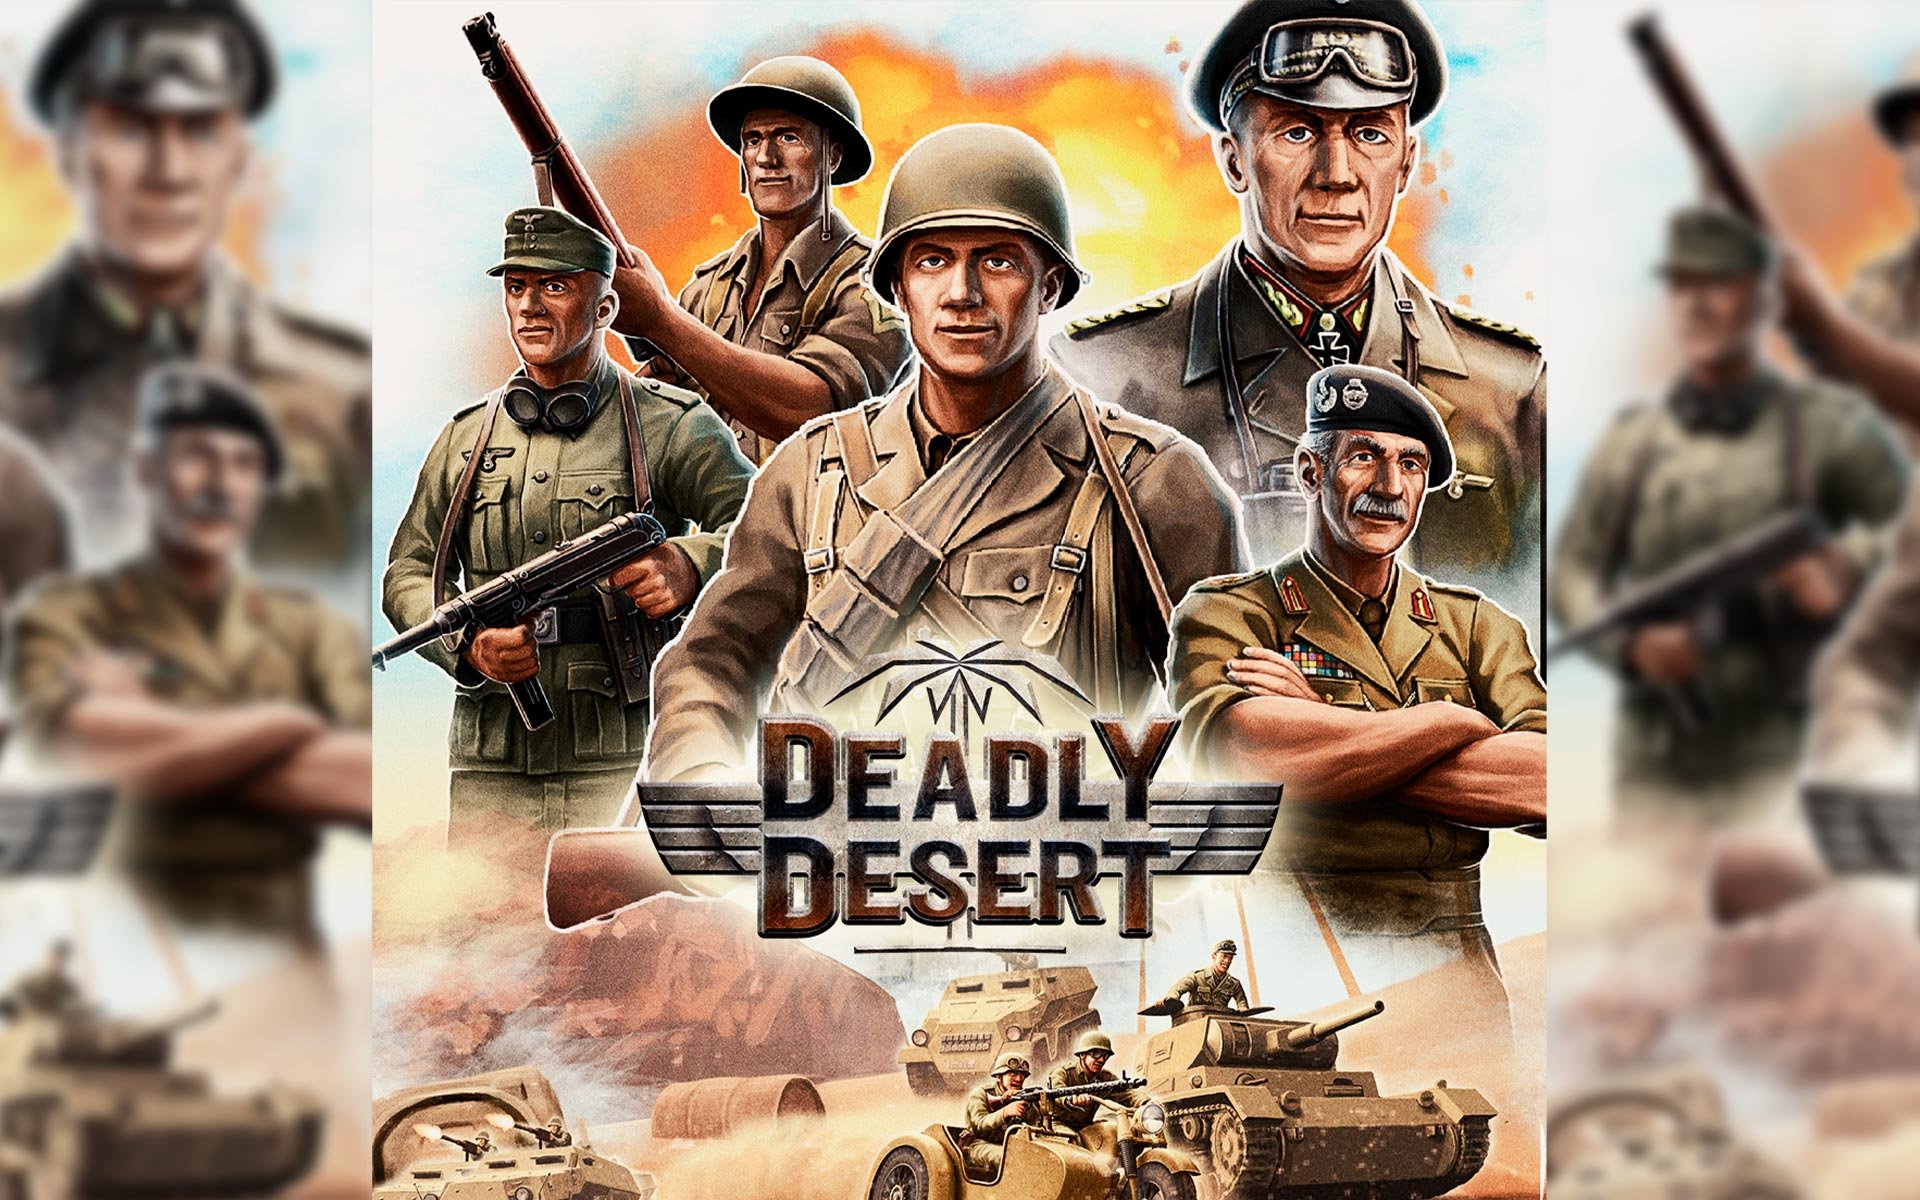 1943 Deadly Desert por R$ 19.99